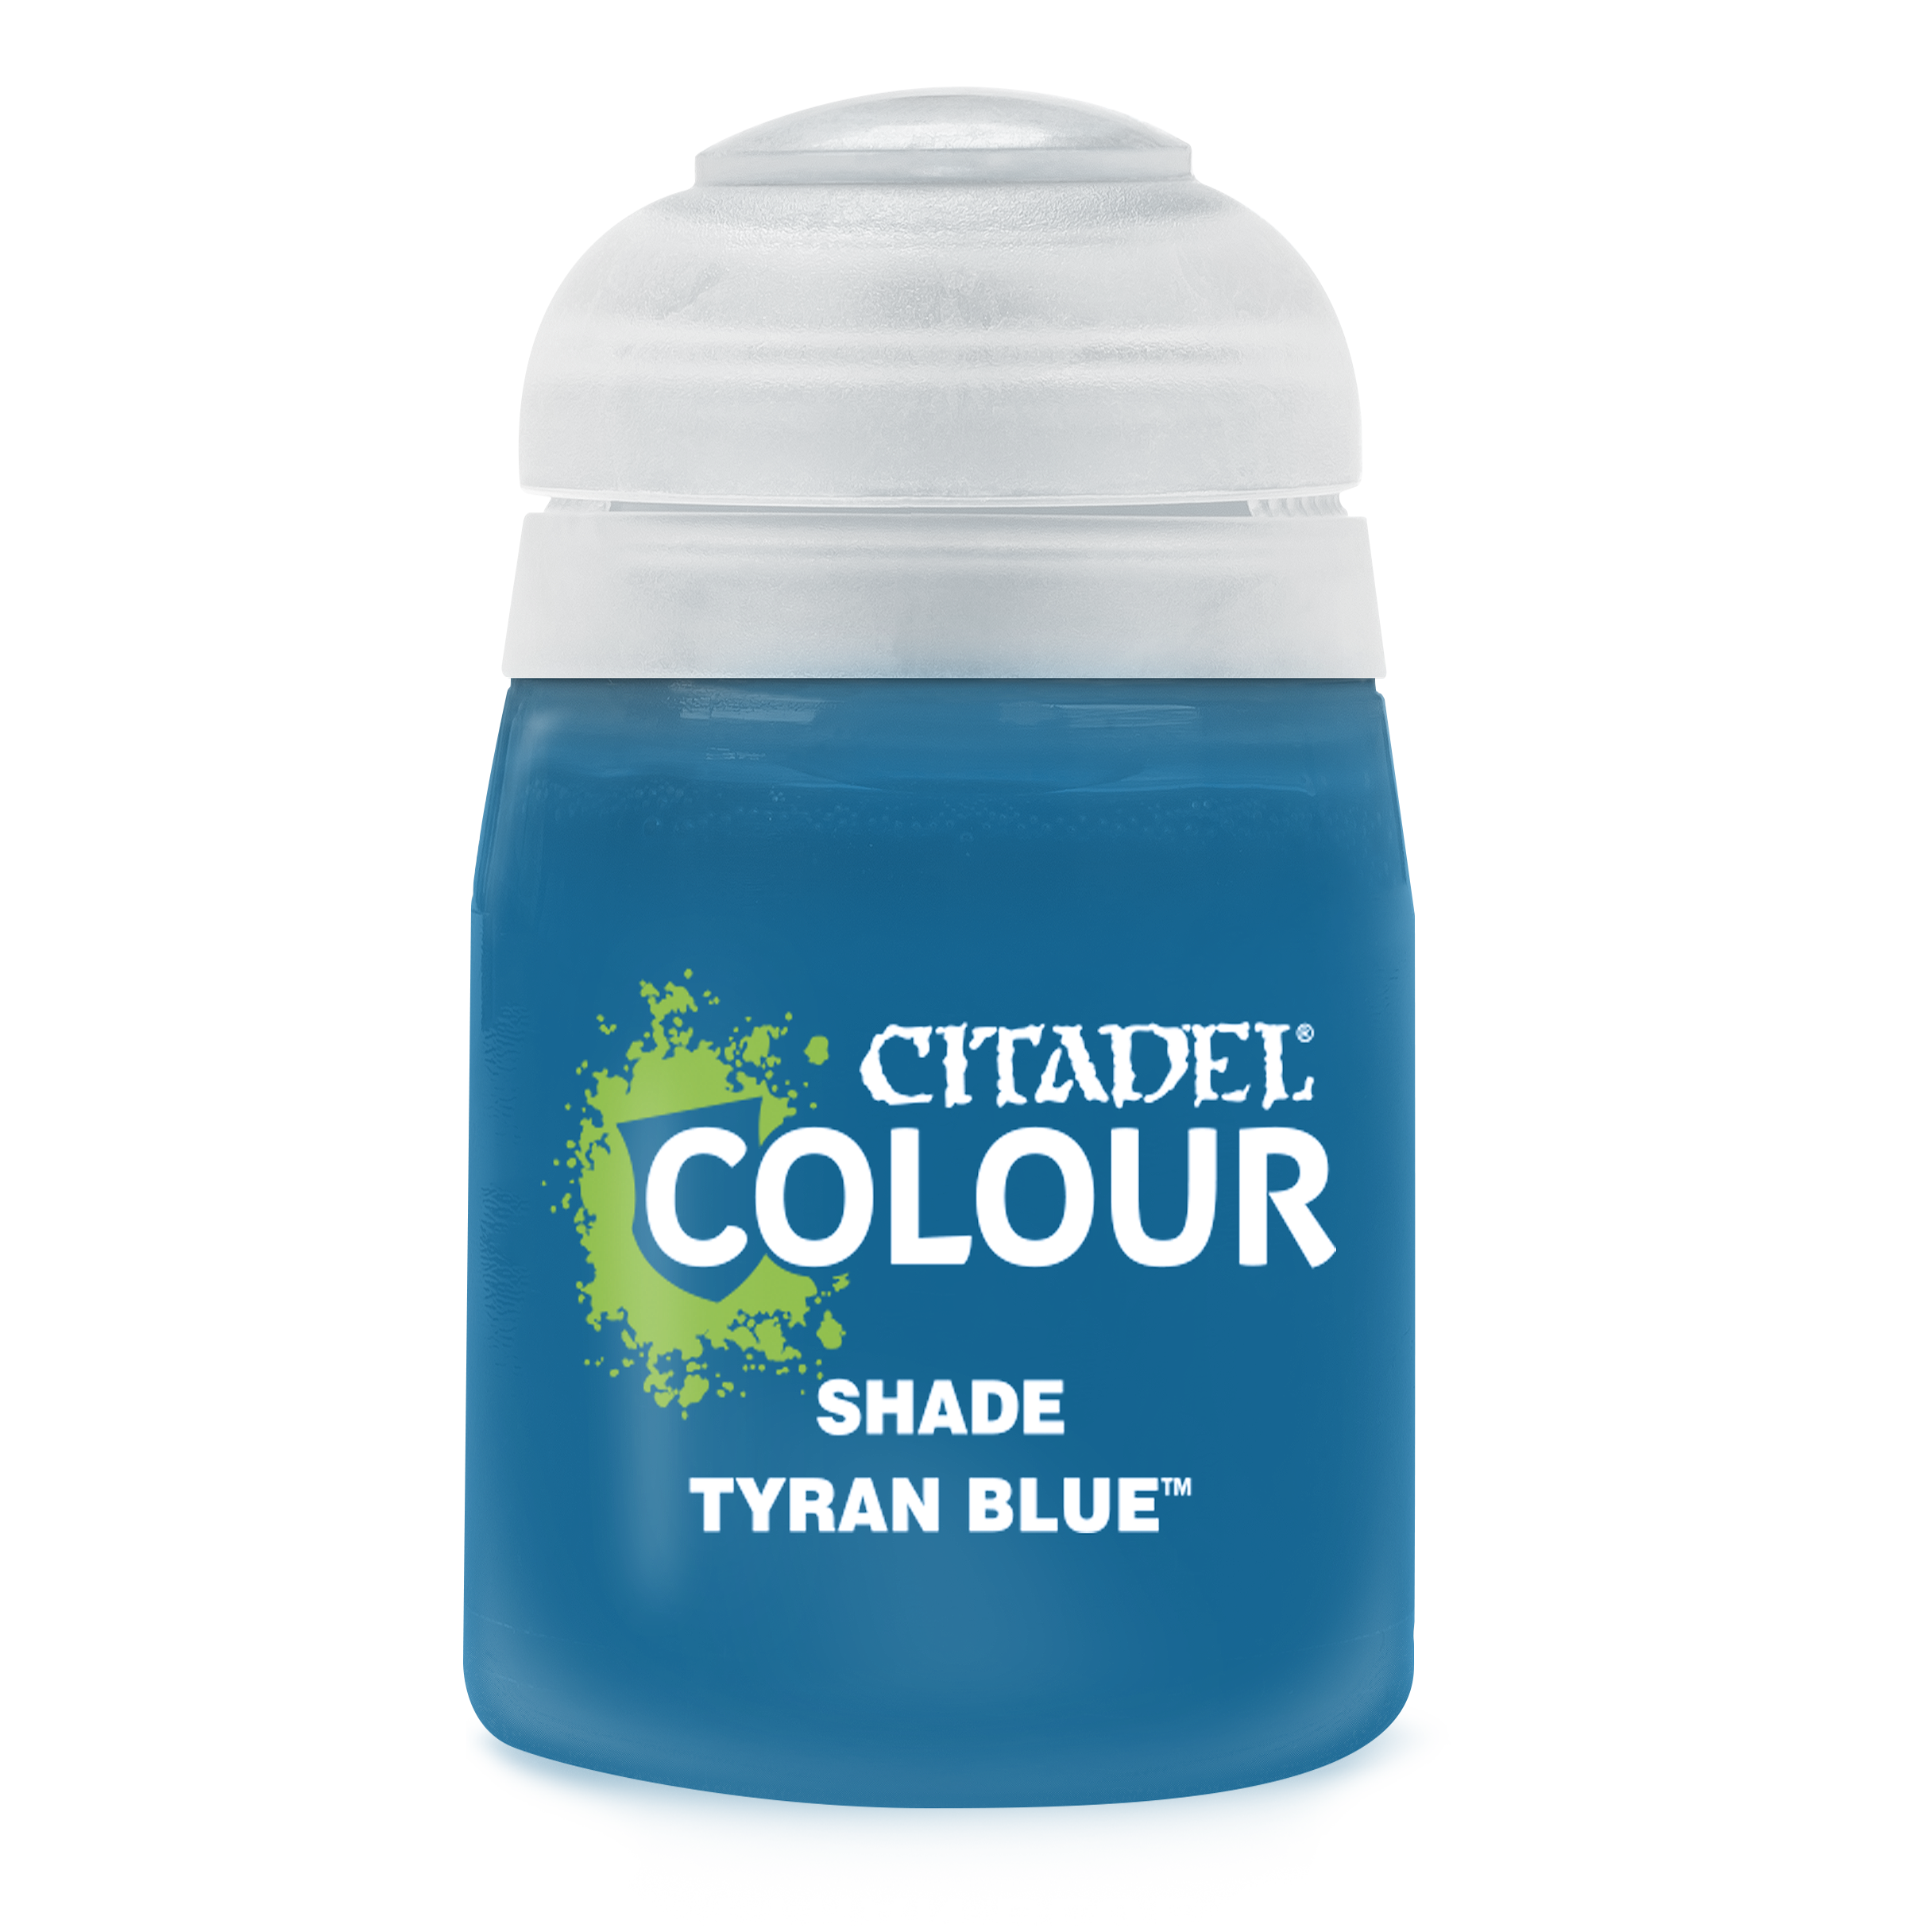 Shade Tyran Blue - Citadel Colour